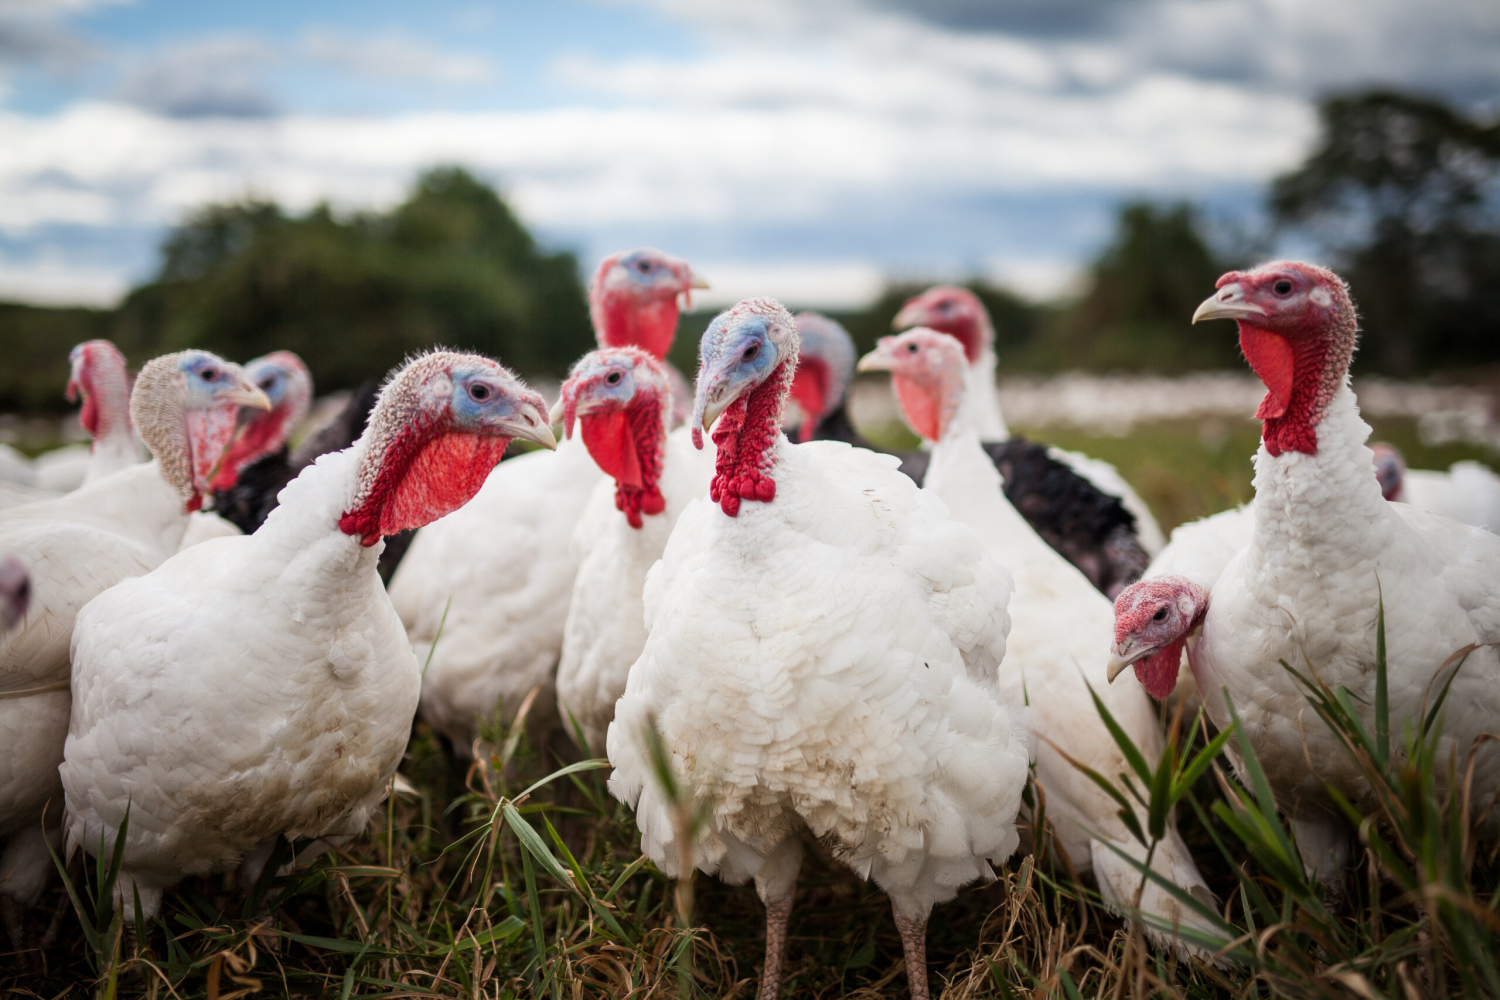 A flock of domestic turkeys gather in a field